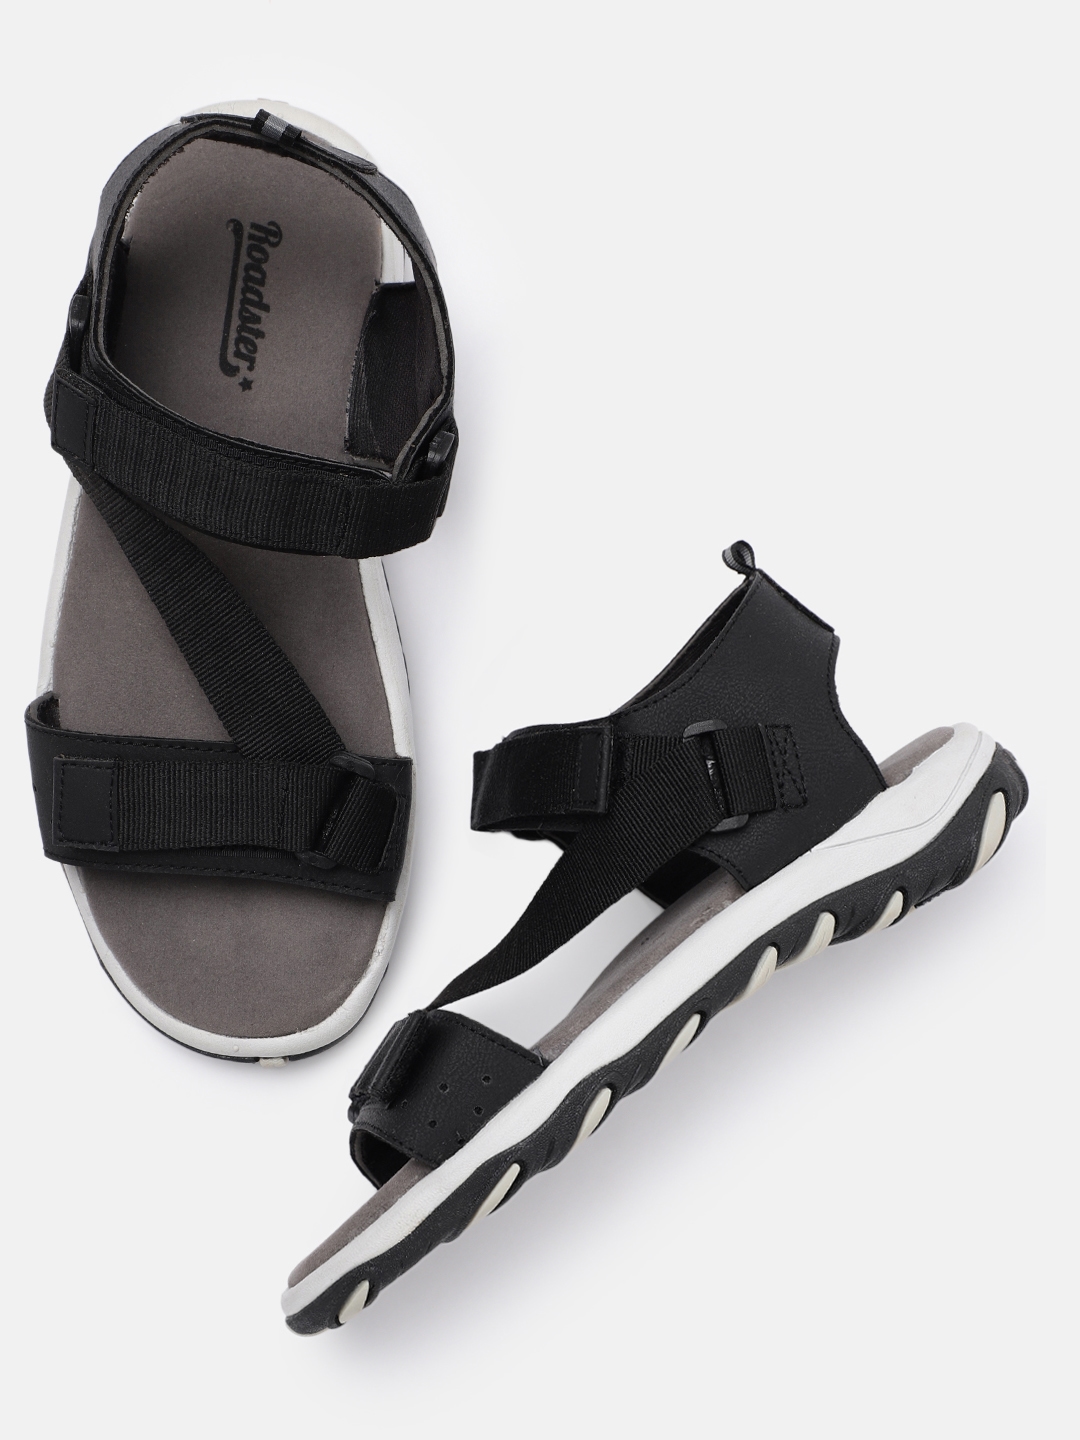 Roadster Sandals - Buy Roadster Sandals online in India